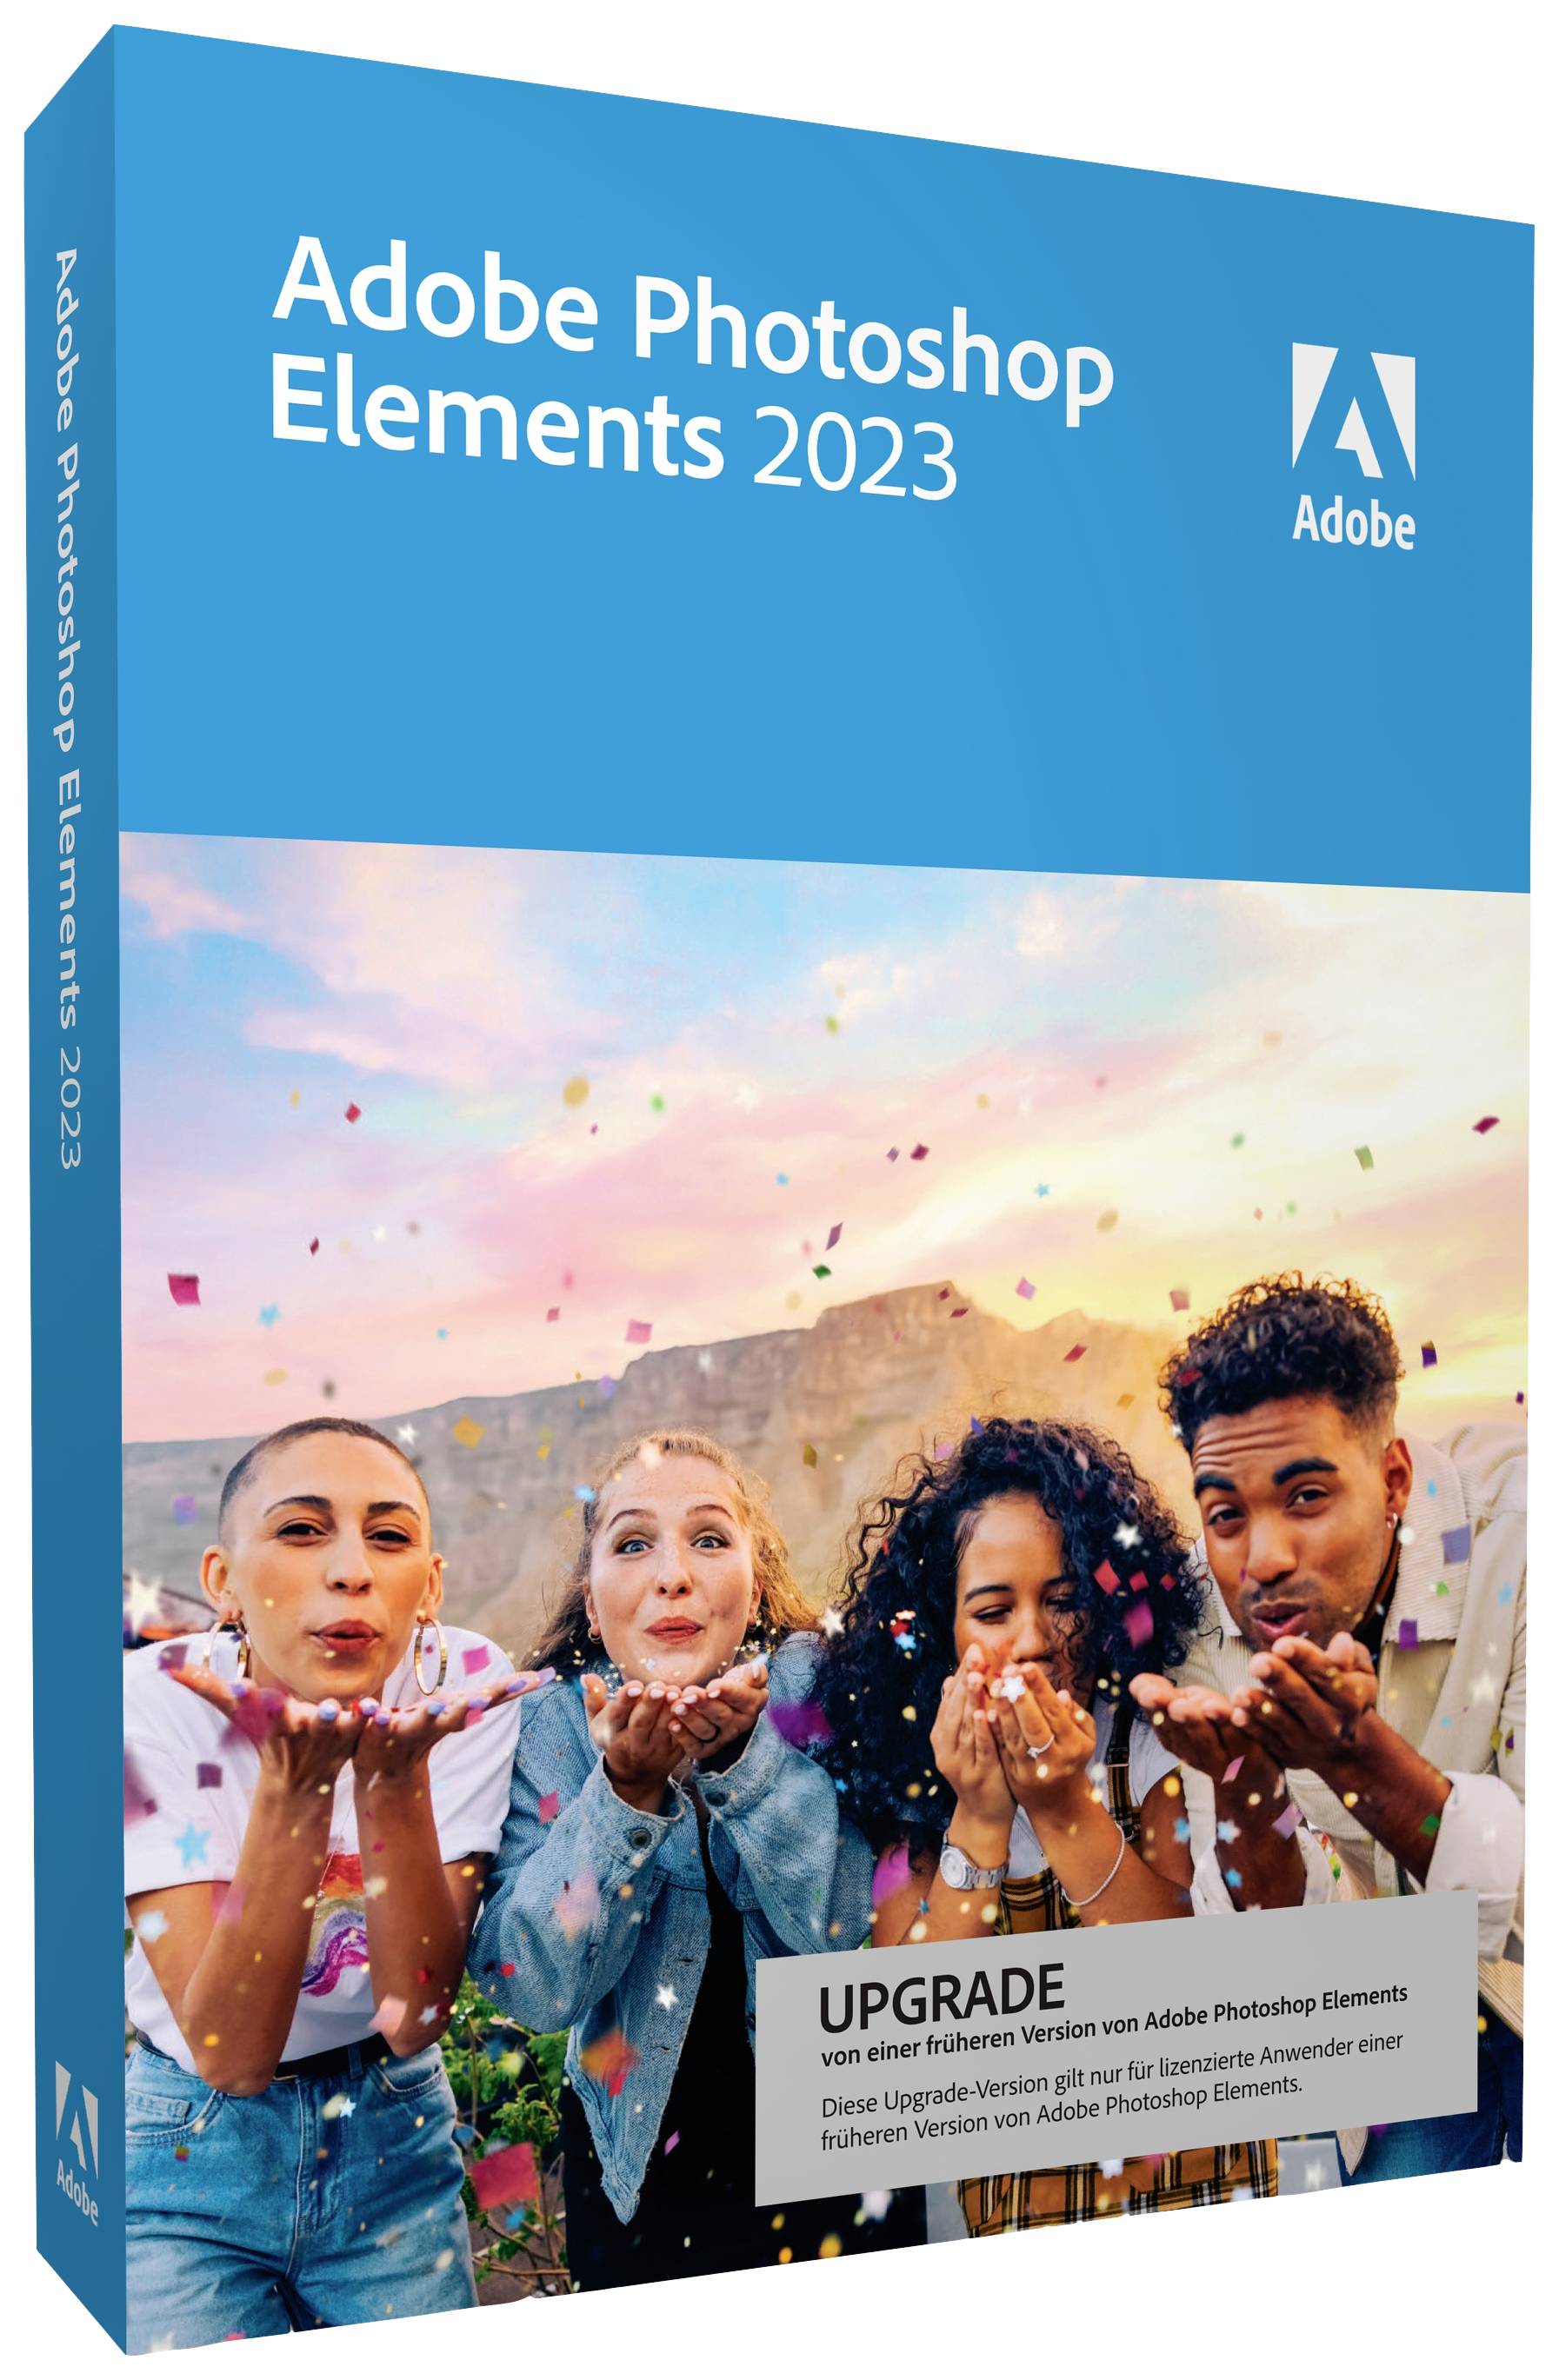 Adobe Elements 2023 1year, 1 licence Windows, Mac OS